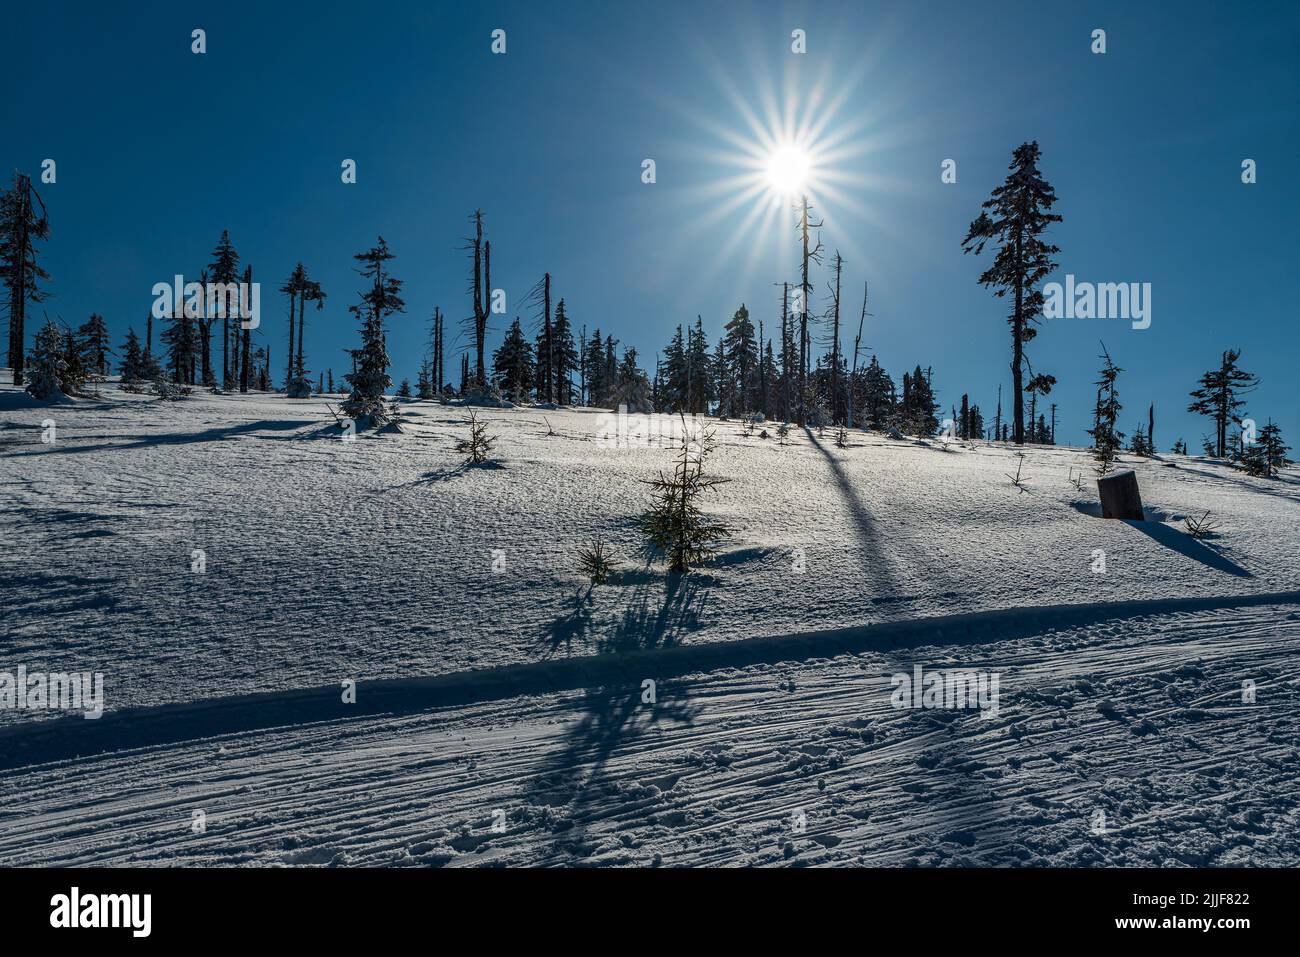 Paesaggio invernale con pista da sci di fondo ben preparata, pochi alberi, cielo limpido e sole sulle montagne di Kralicky Sneznik nella repubblica Ceca Foto Stock